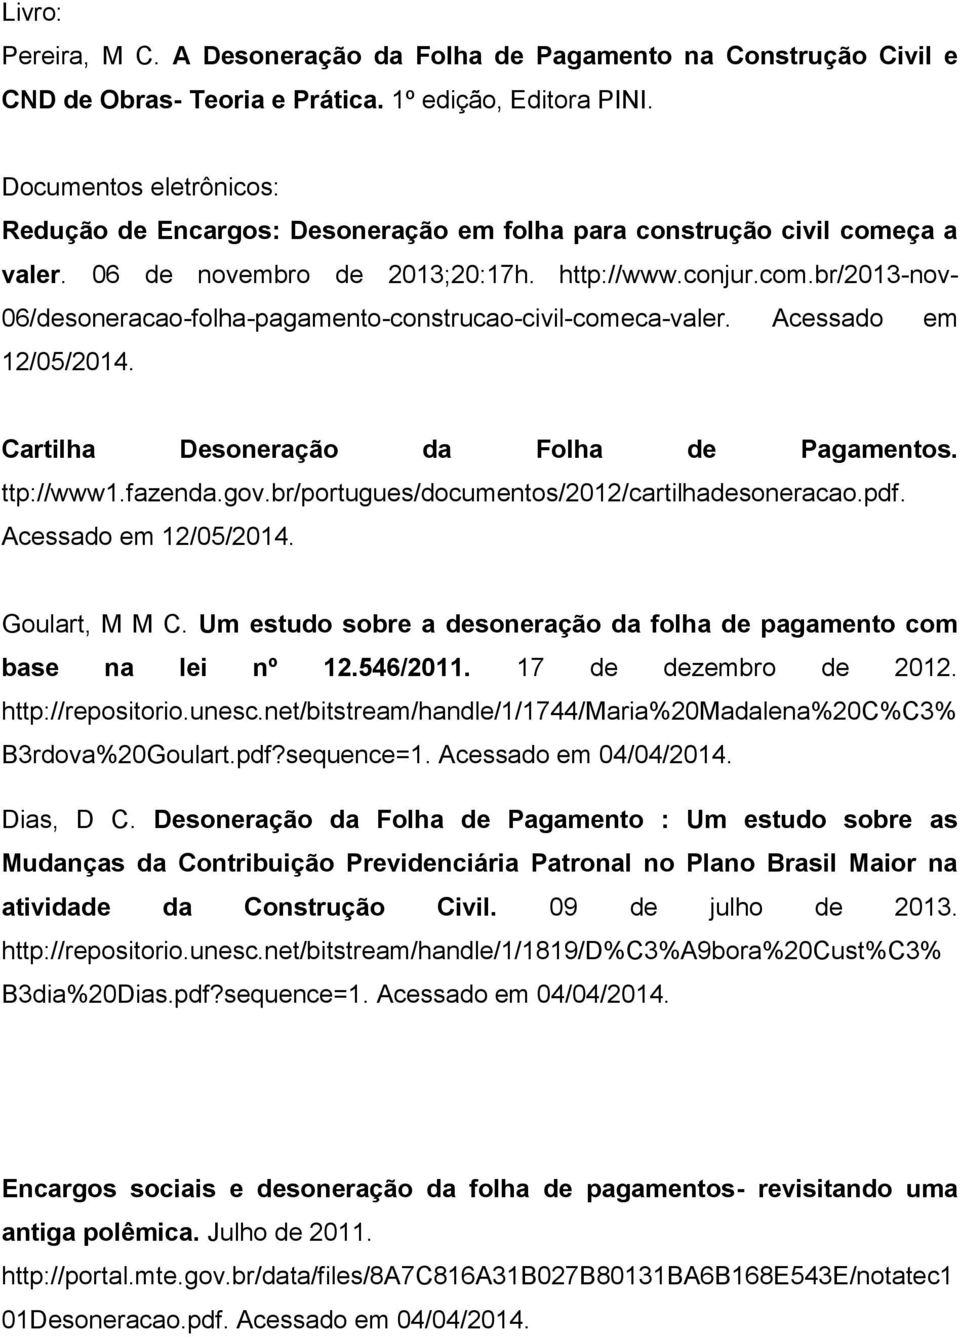 Acessado em 12/05/2014. Cartilha Desoneração da Folha de Pagamentos. ttp://www1.fazenda.gov.br/portugues/documentos/2012/cartilhadesoneracao.pdf. Acessado em 12/05/2014. Goulart, M M C.